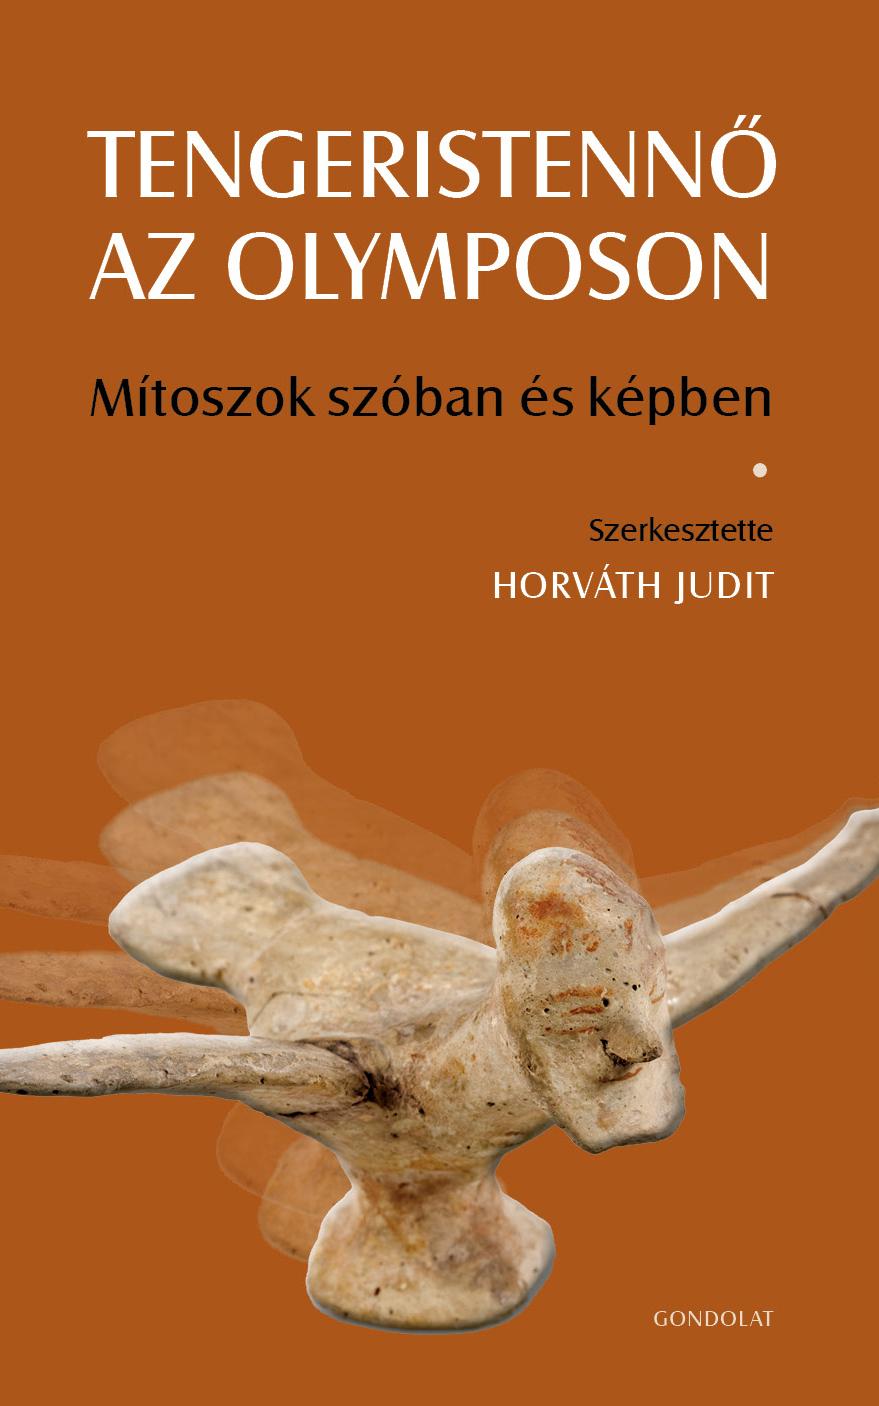 Horváth Judit (szerk.) - Tengeristennő az Olymposon. Mítoszok szóban és képben